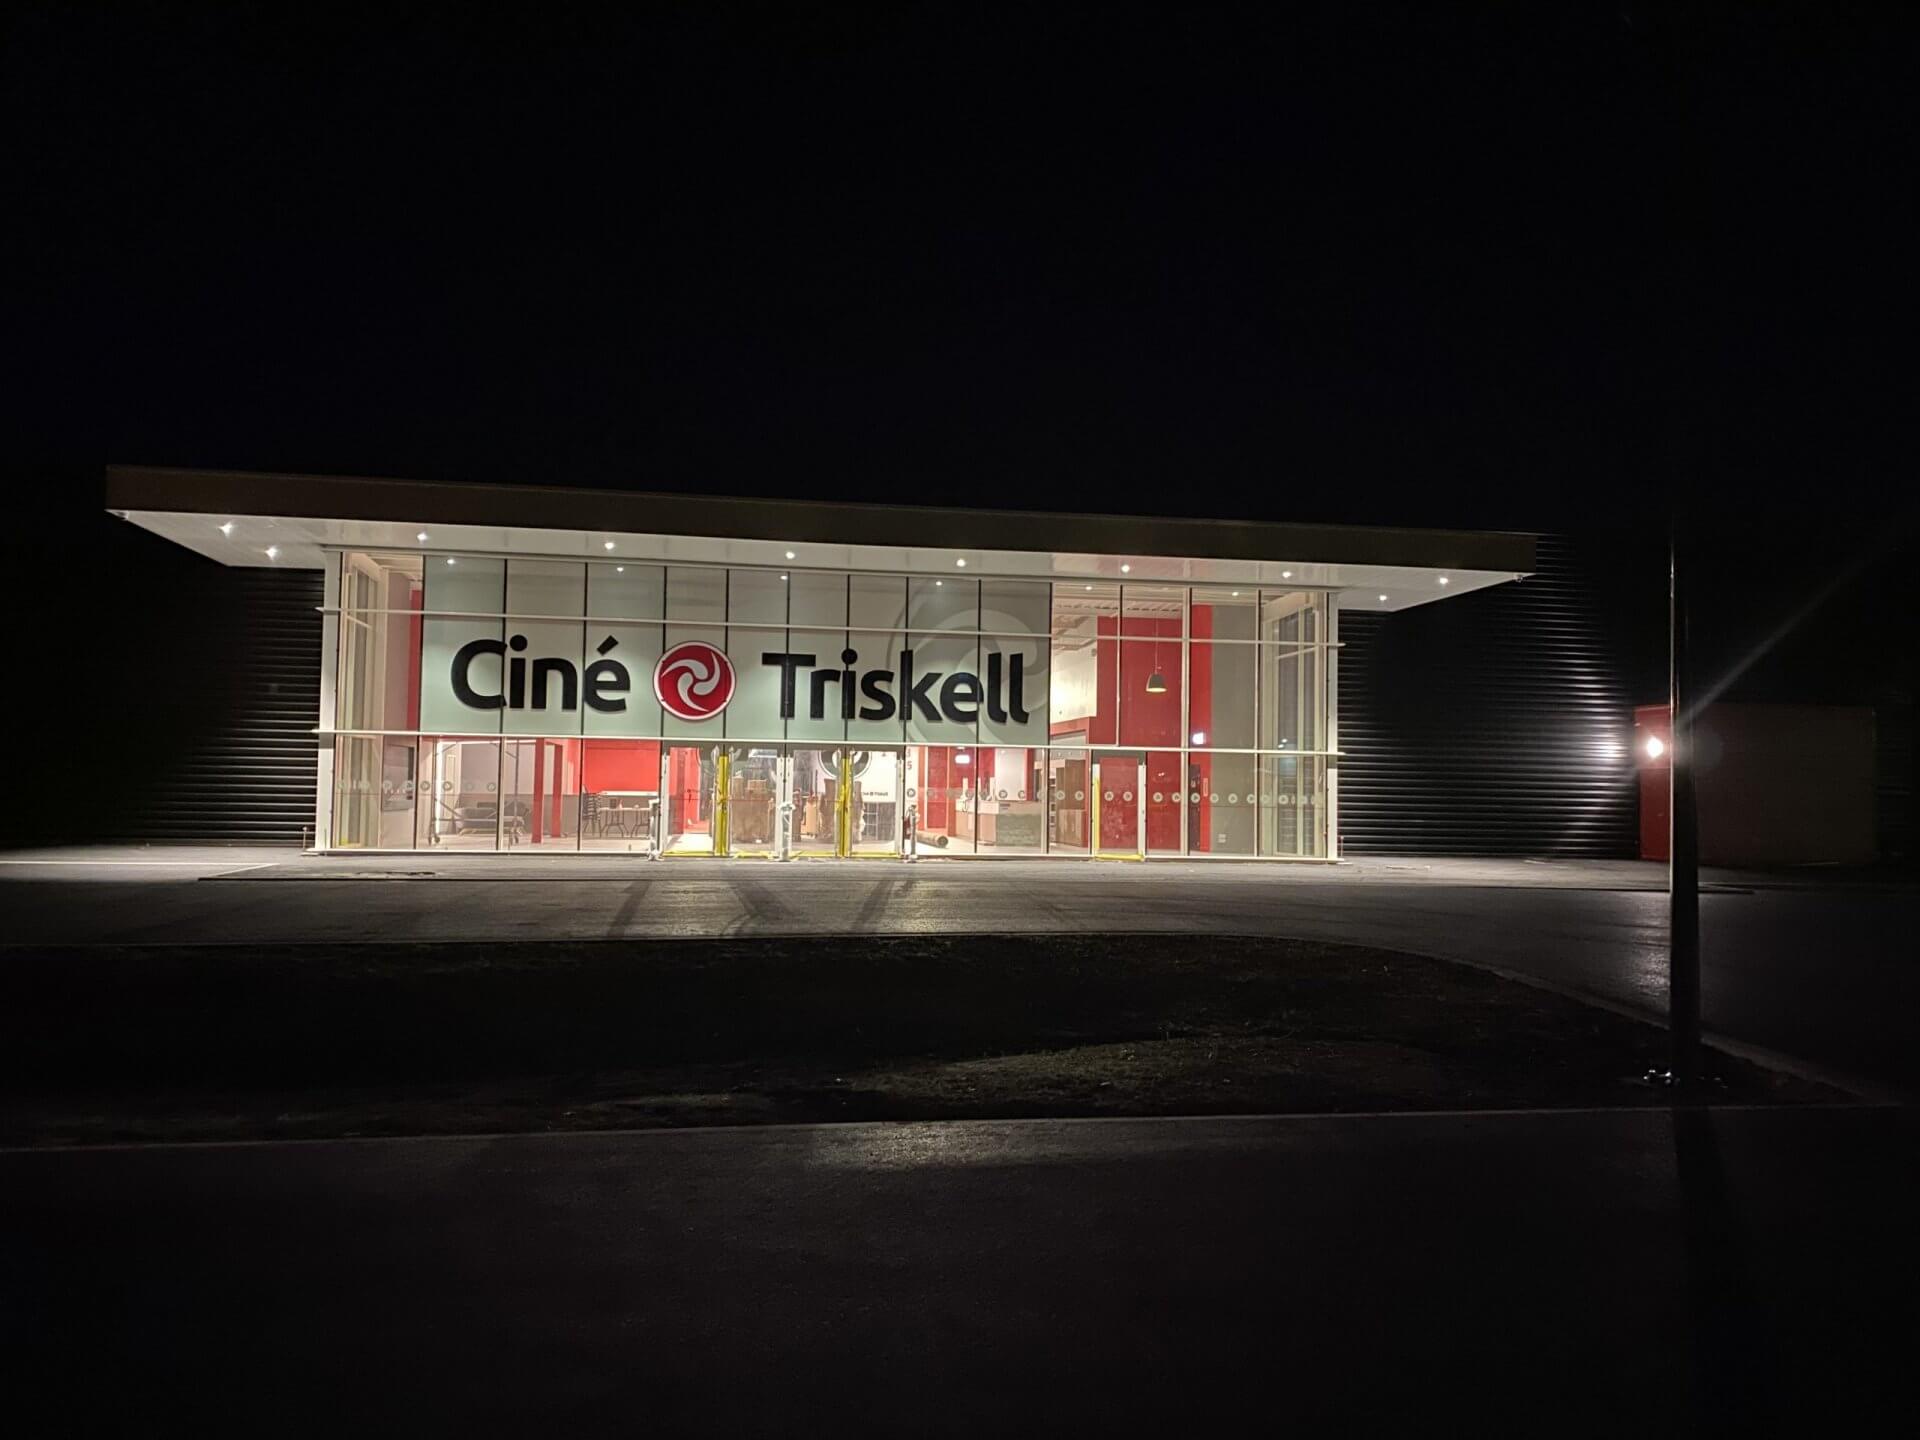 Kleslo - fauteuil club- Leader de fabrication de fauteuils cinéma, théâtre ... cinéma Ciné Triskell de Challans v2